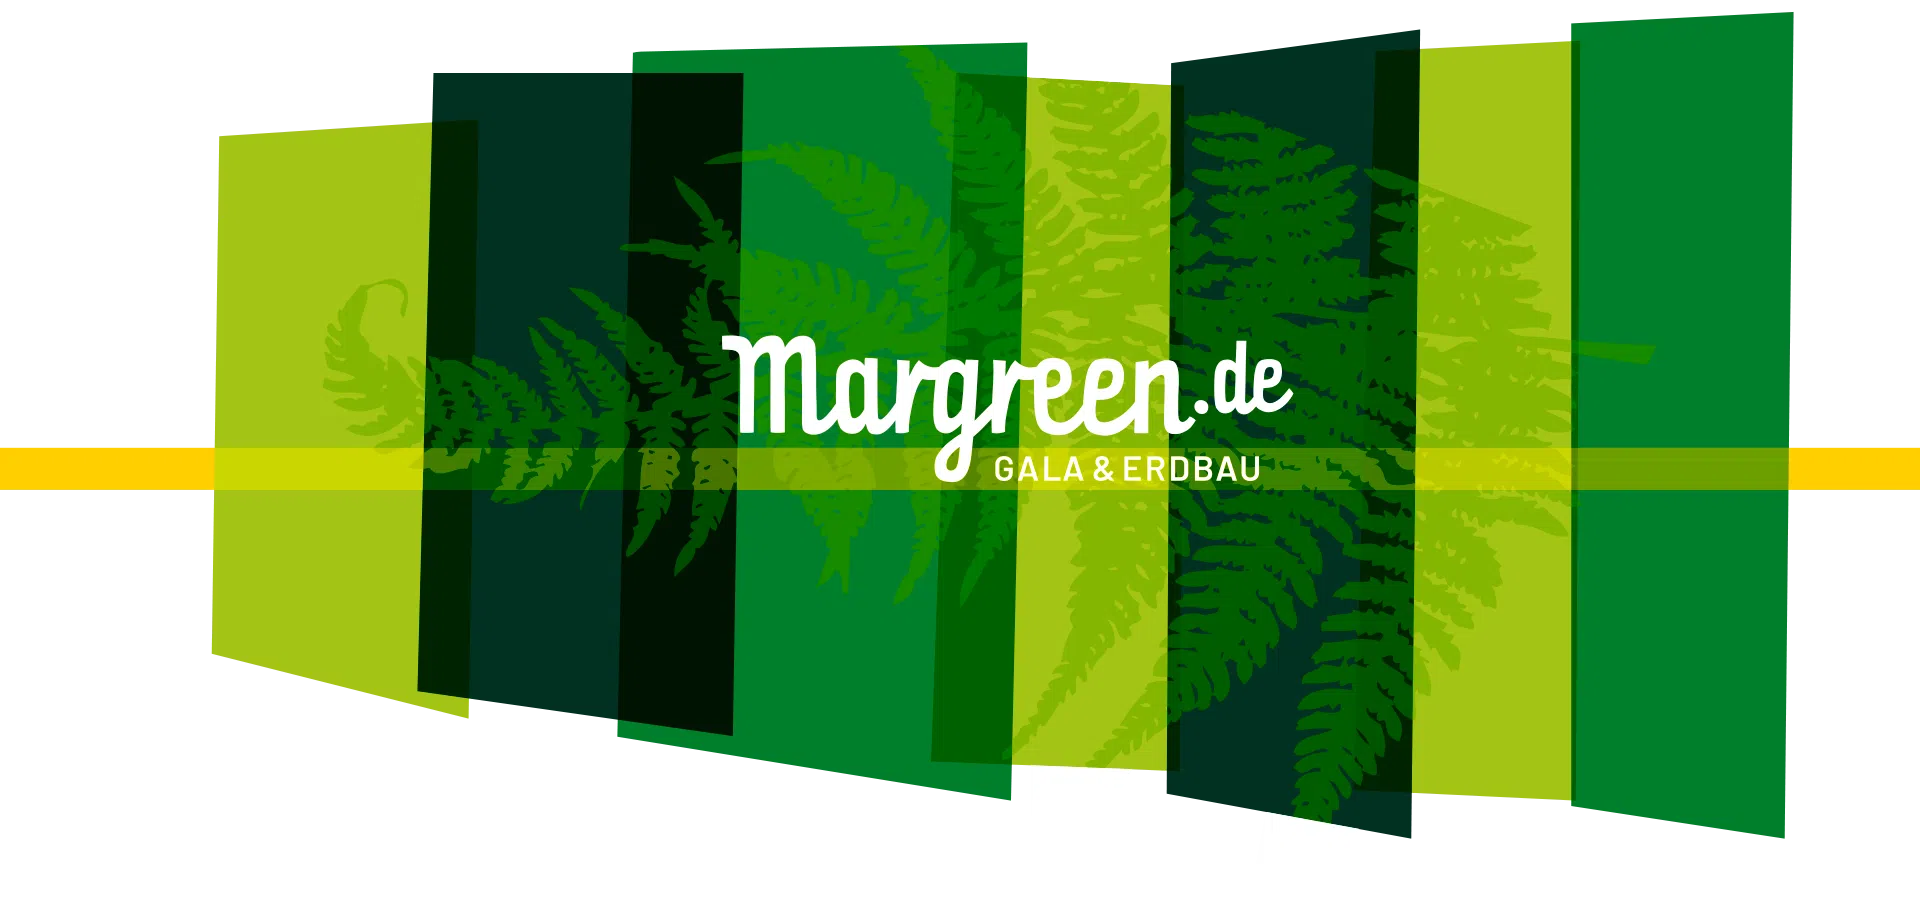 margreen-schema